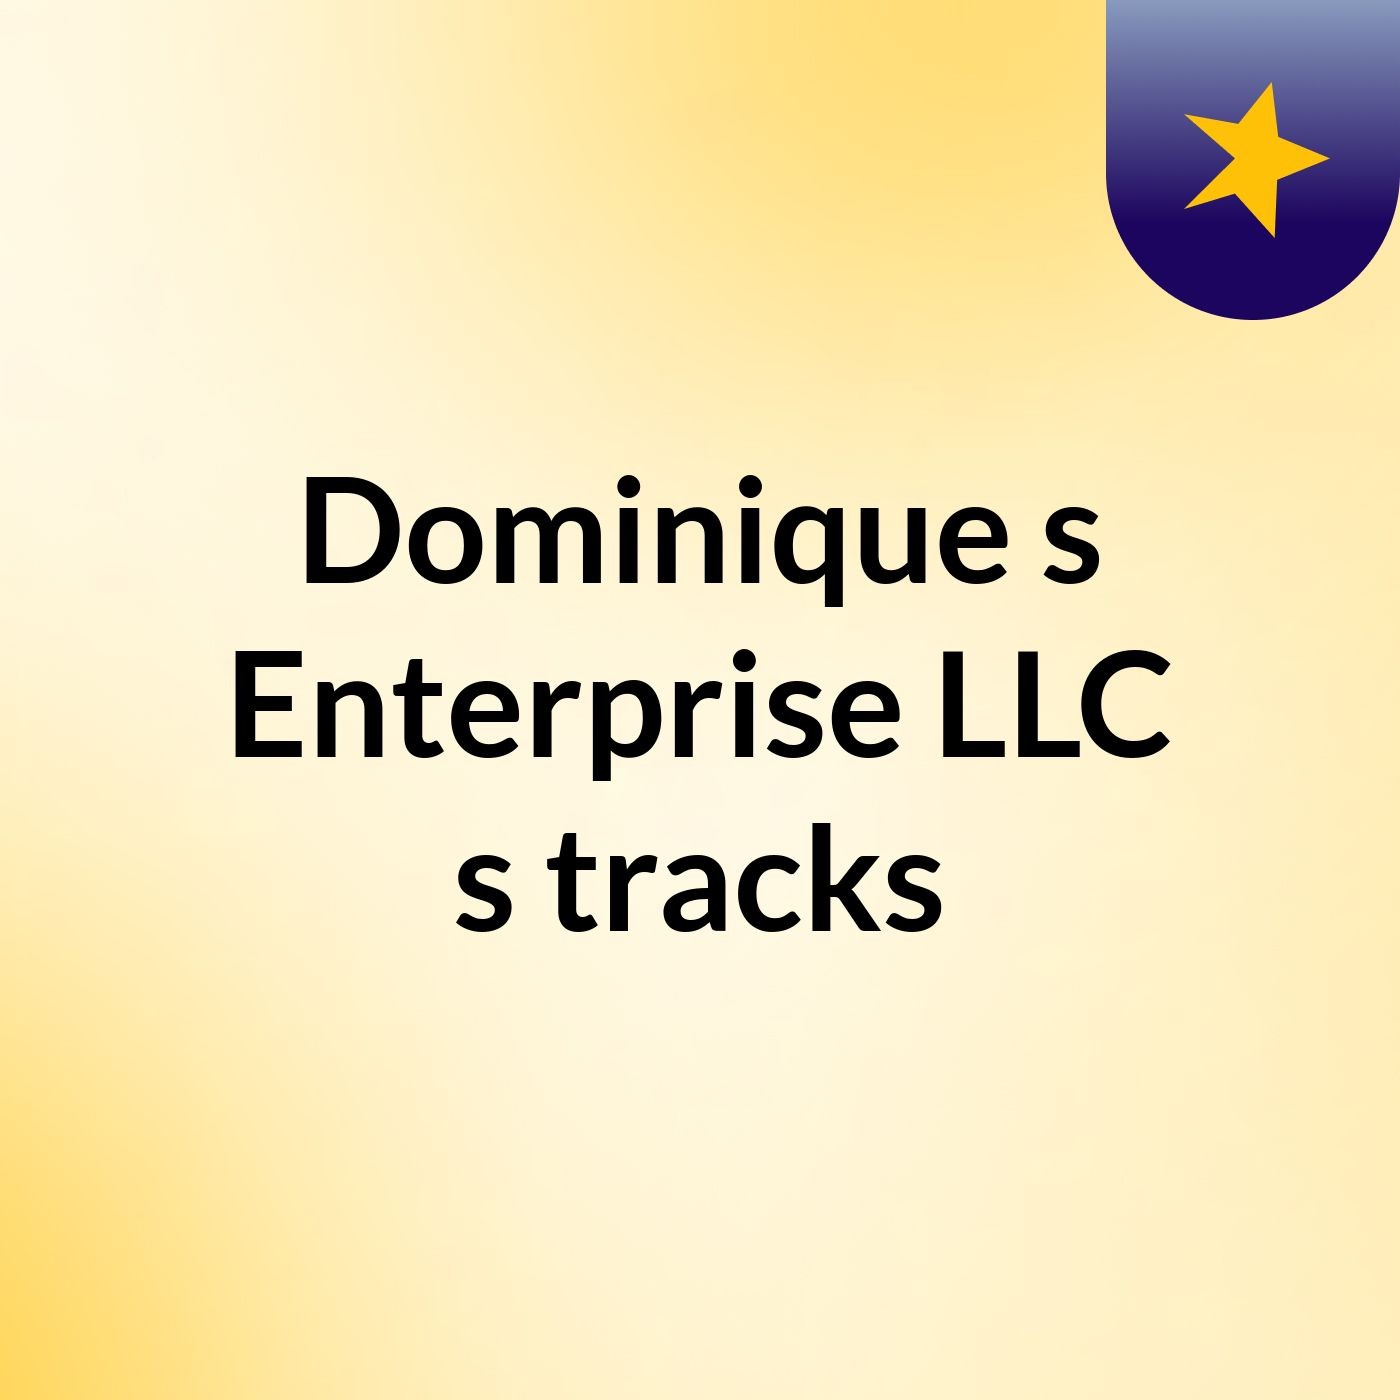 Dominique's Enterprise LLC's tracks